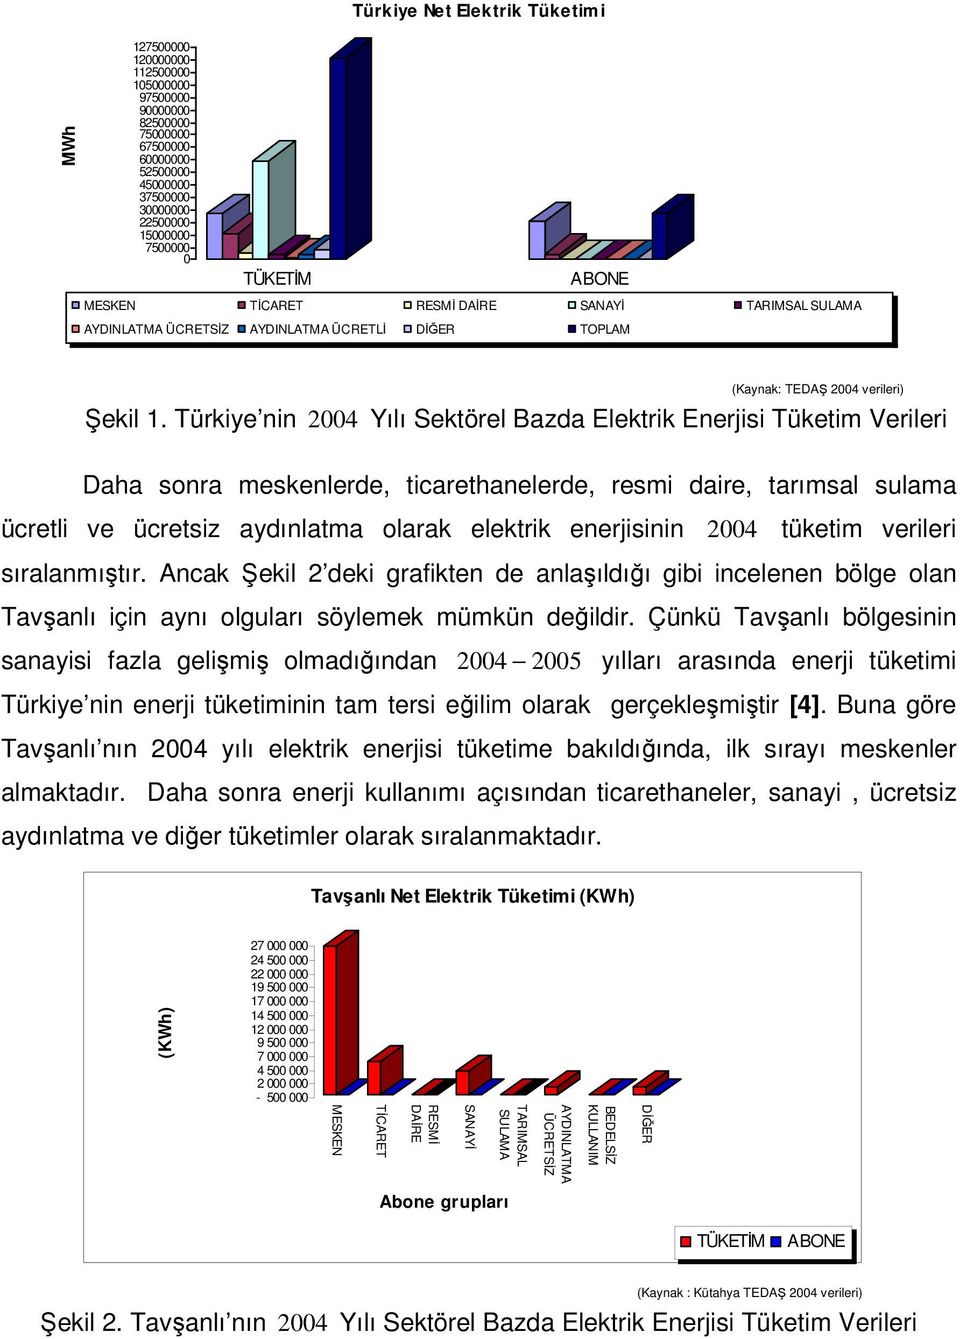 Türkiye nin 2004 Yılı Sektörel Bazda Elektrik Enerjisi Tüketim Verileri Daha sonra meskenlerde, ticarethanelerde, resmi daire, tarımsal sulama ücretli ve ücretsiz aydınlatma olarak elektrik